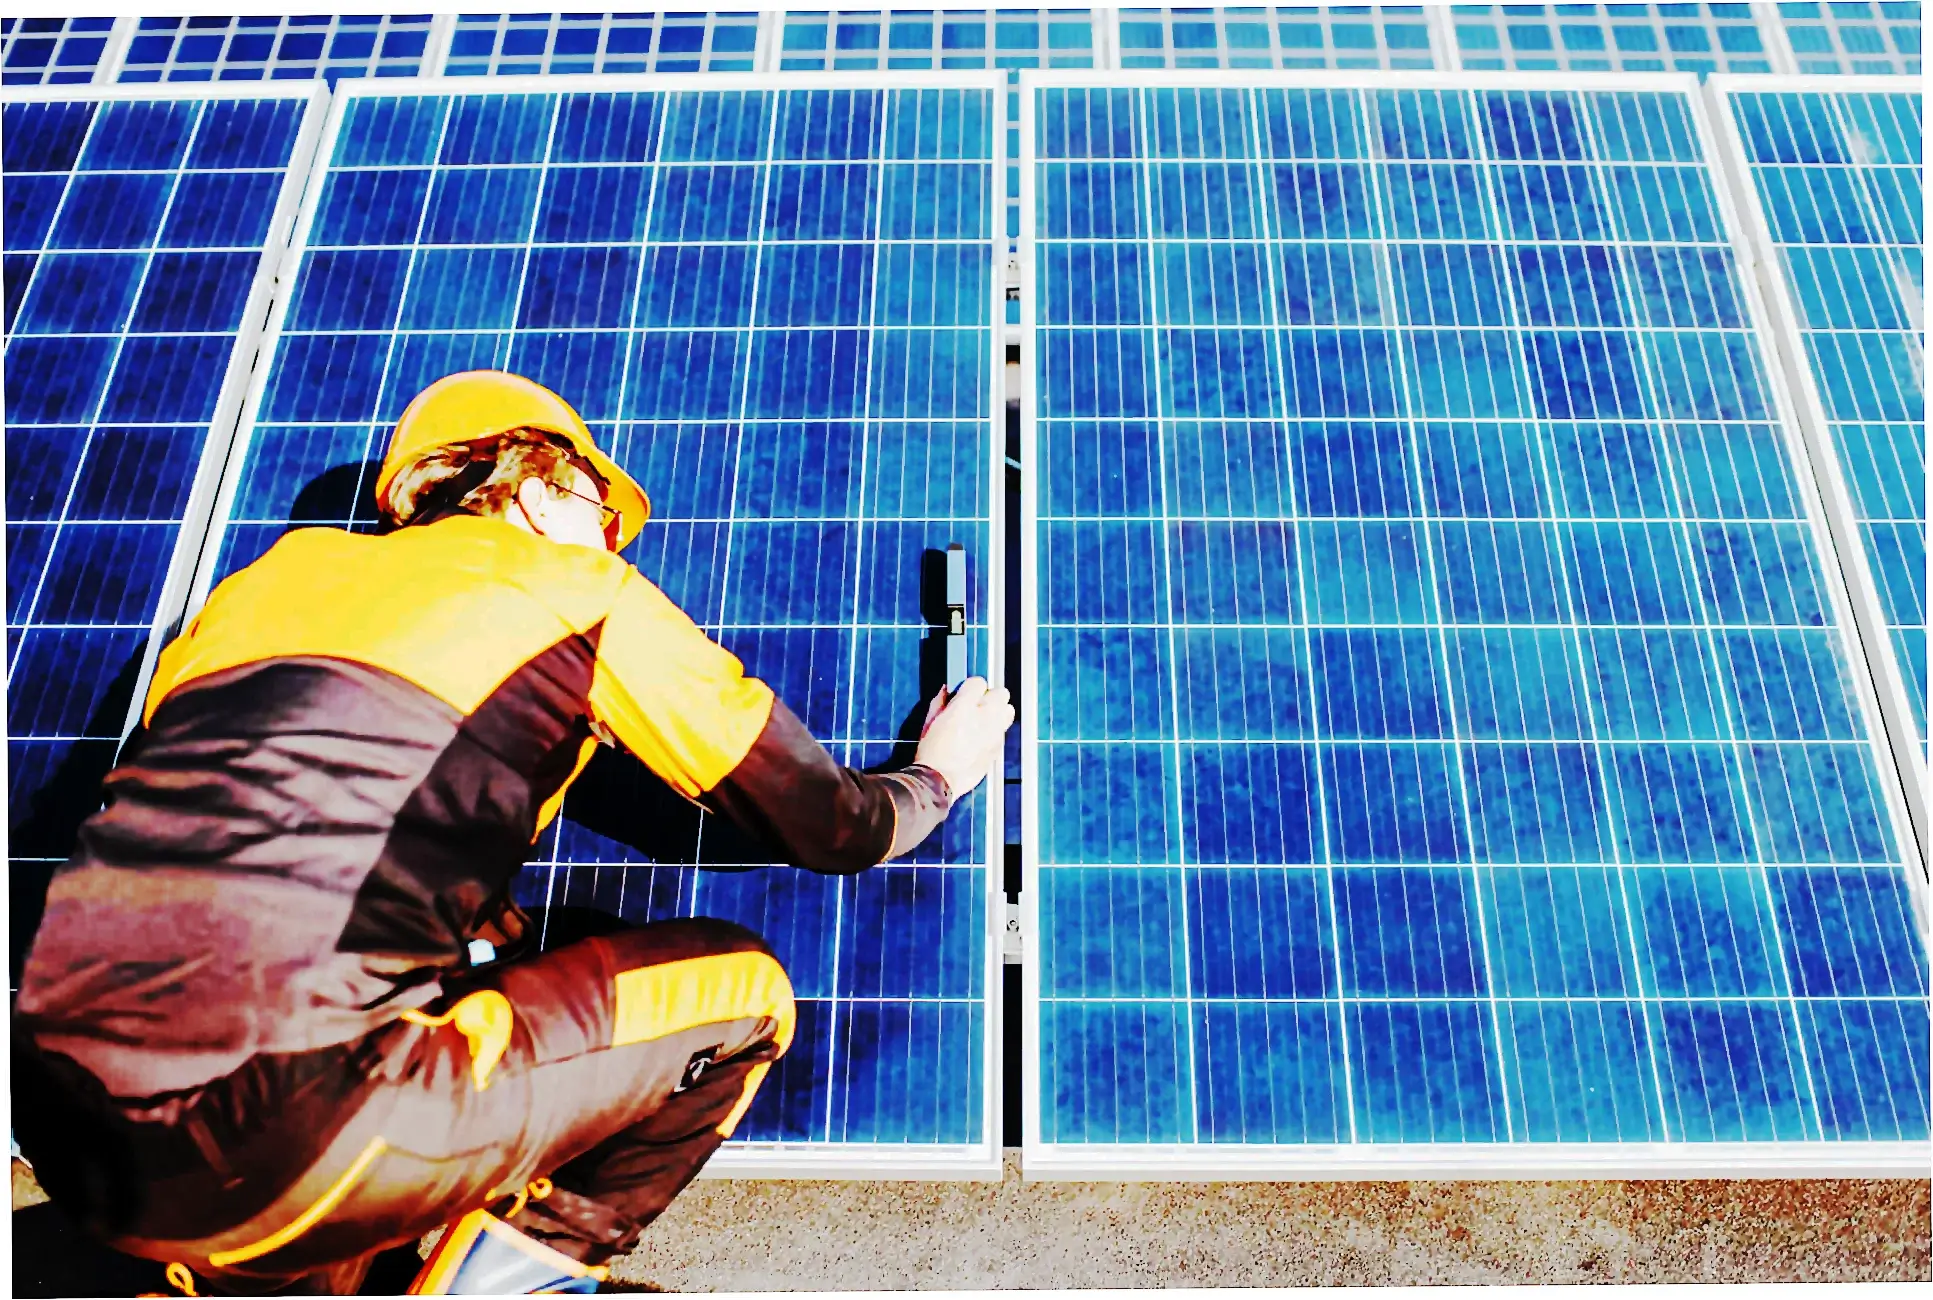 Fotovoltios Placas solares instalación Fotovoltaicas baratas